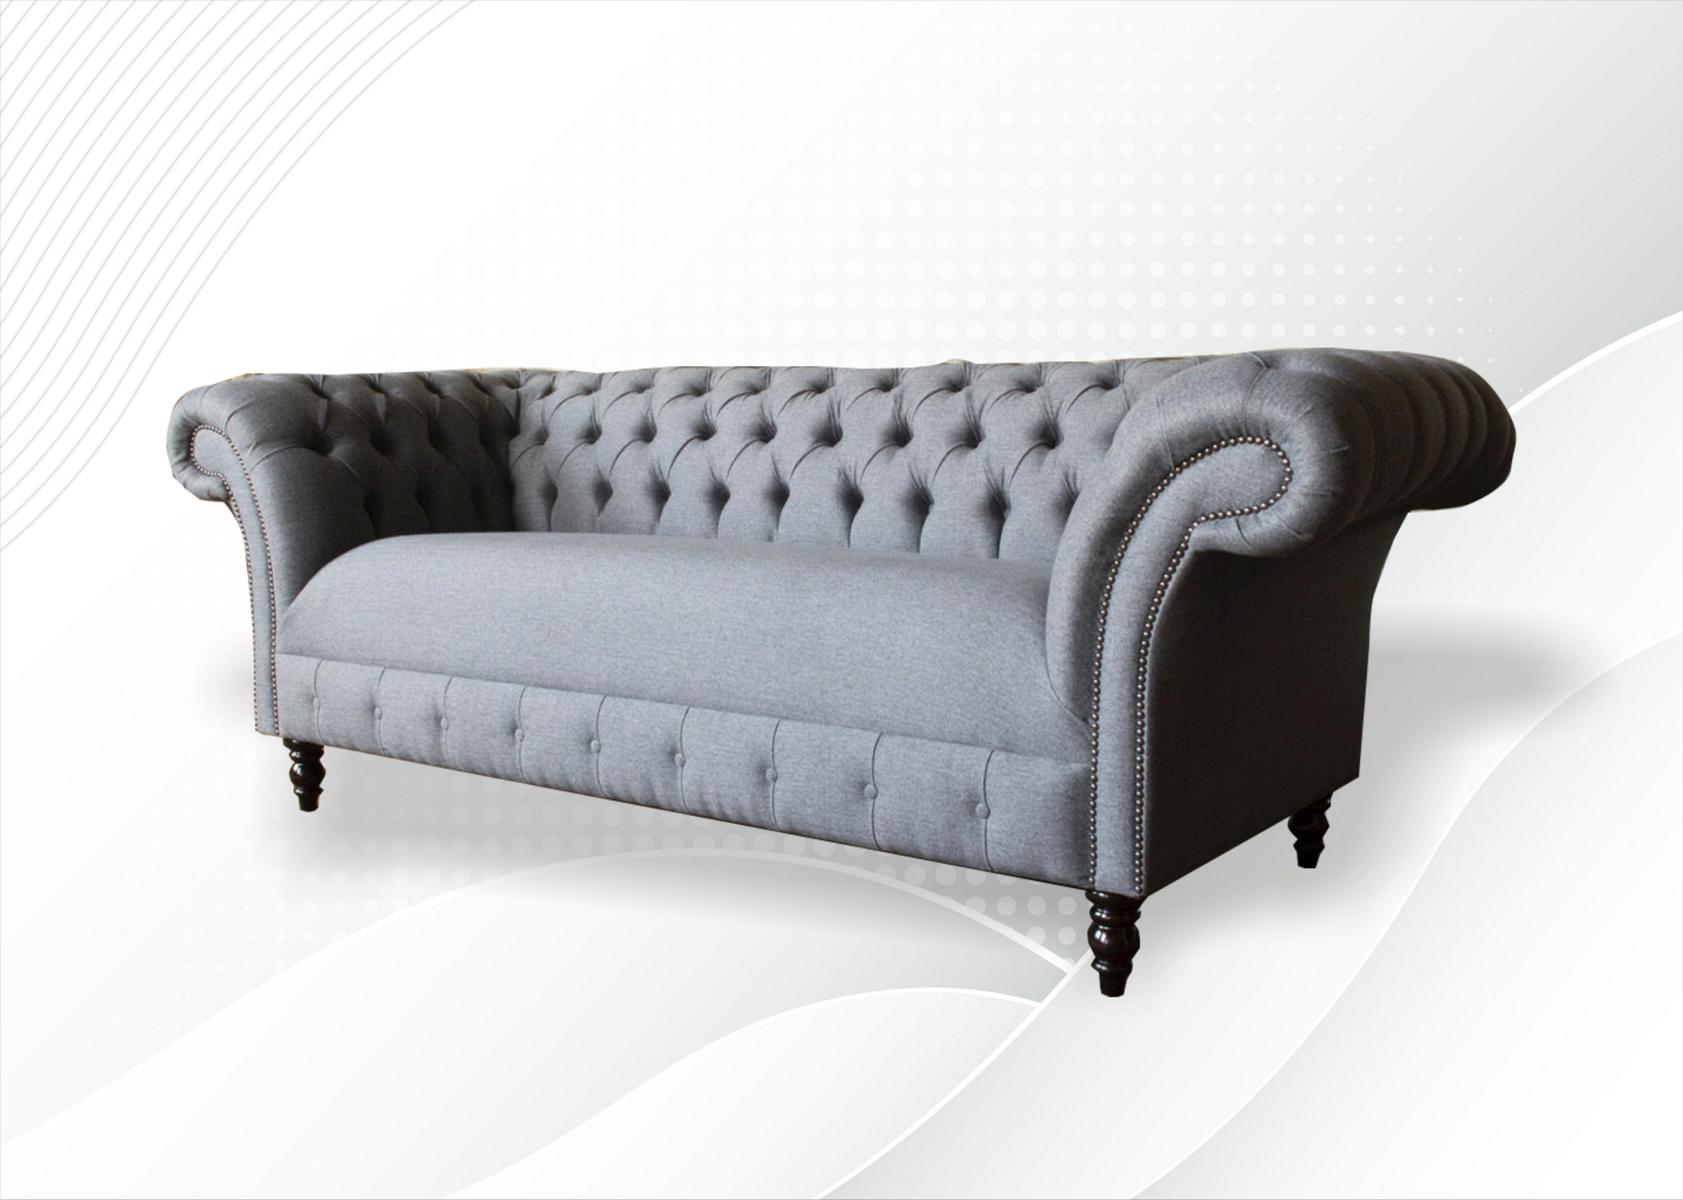 xxl Big Sofa 3 Sitzer Couch Chesterfield Polster Sitz Garnitur Stoff Textil